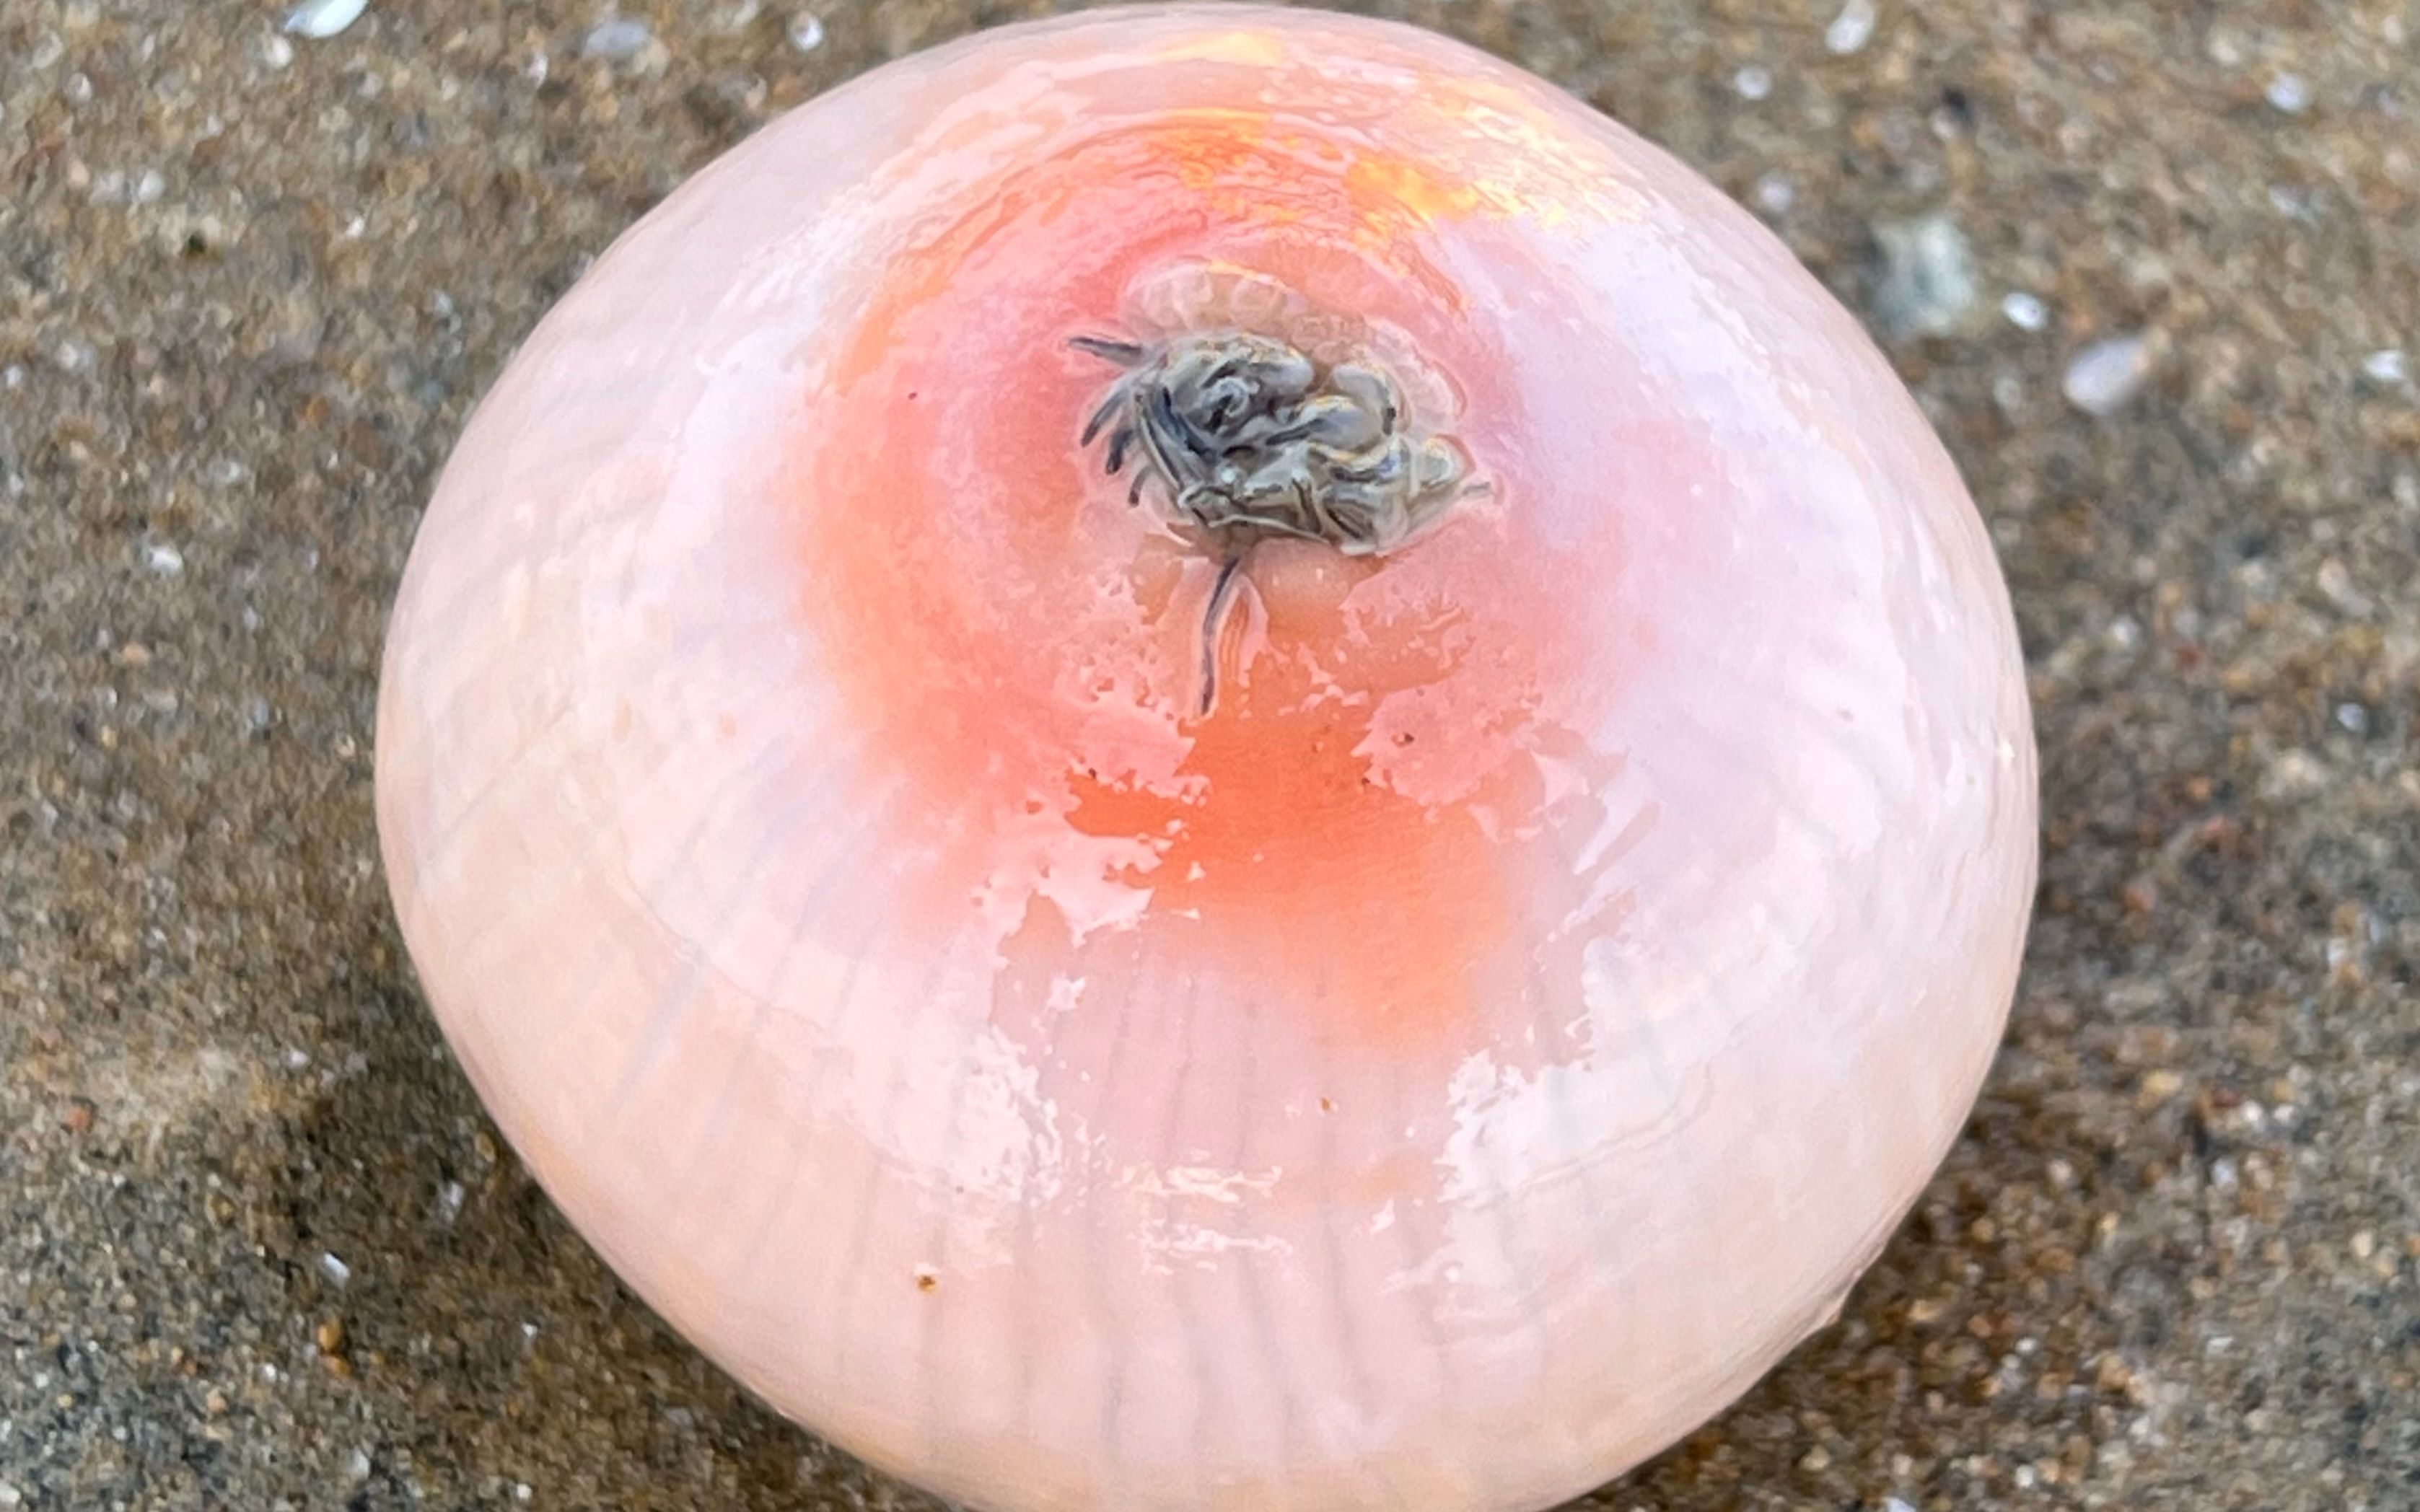 大庆赶海，退潮后发现一个圆形大海葵藏在沙中，好像鸡蛋一样